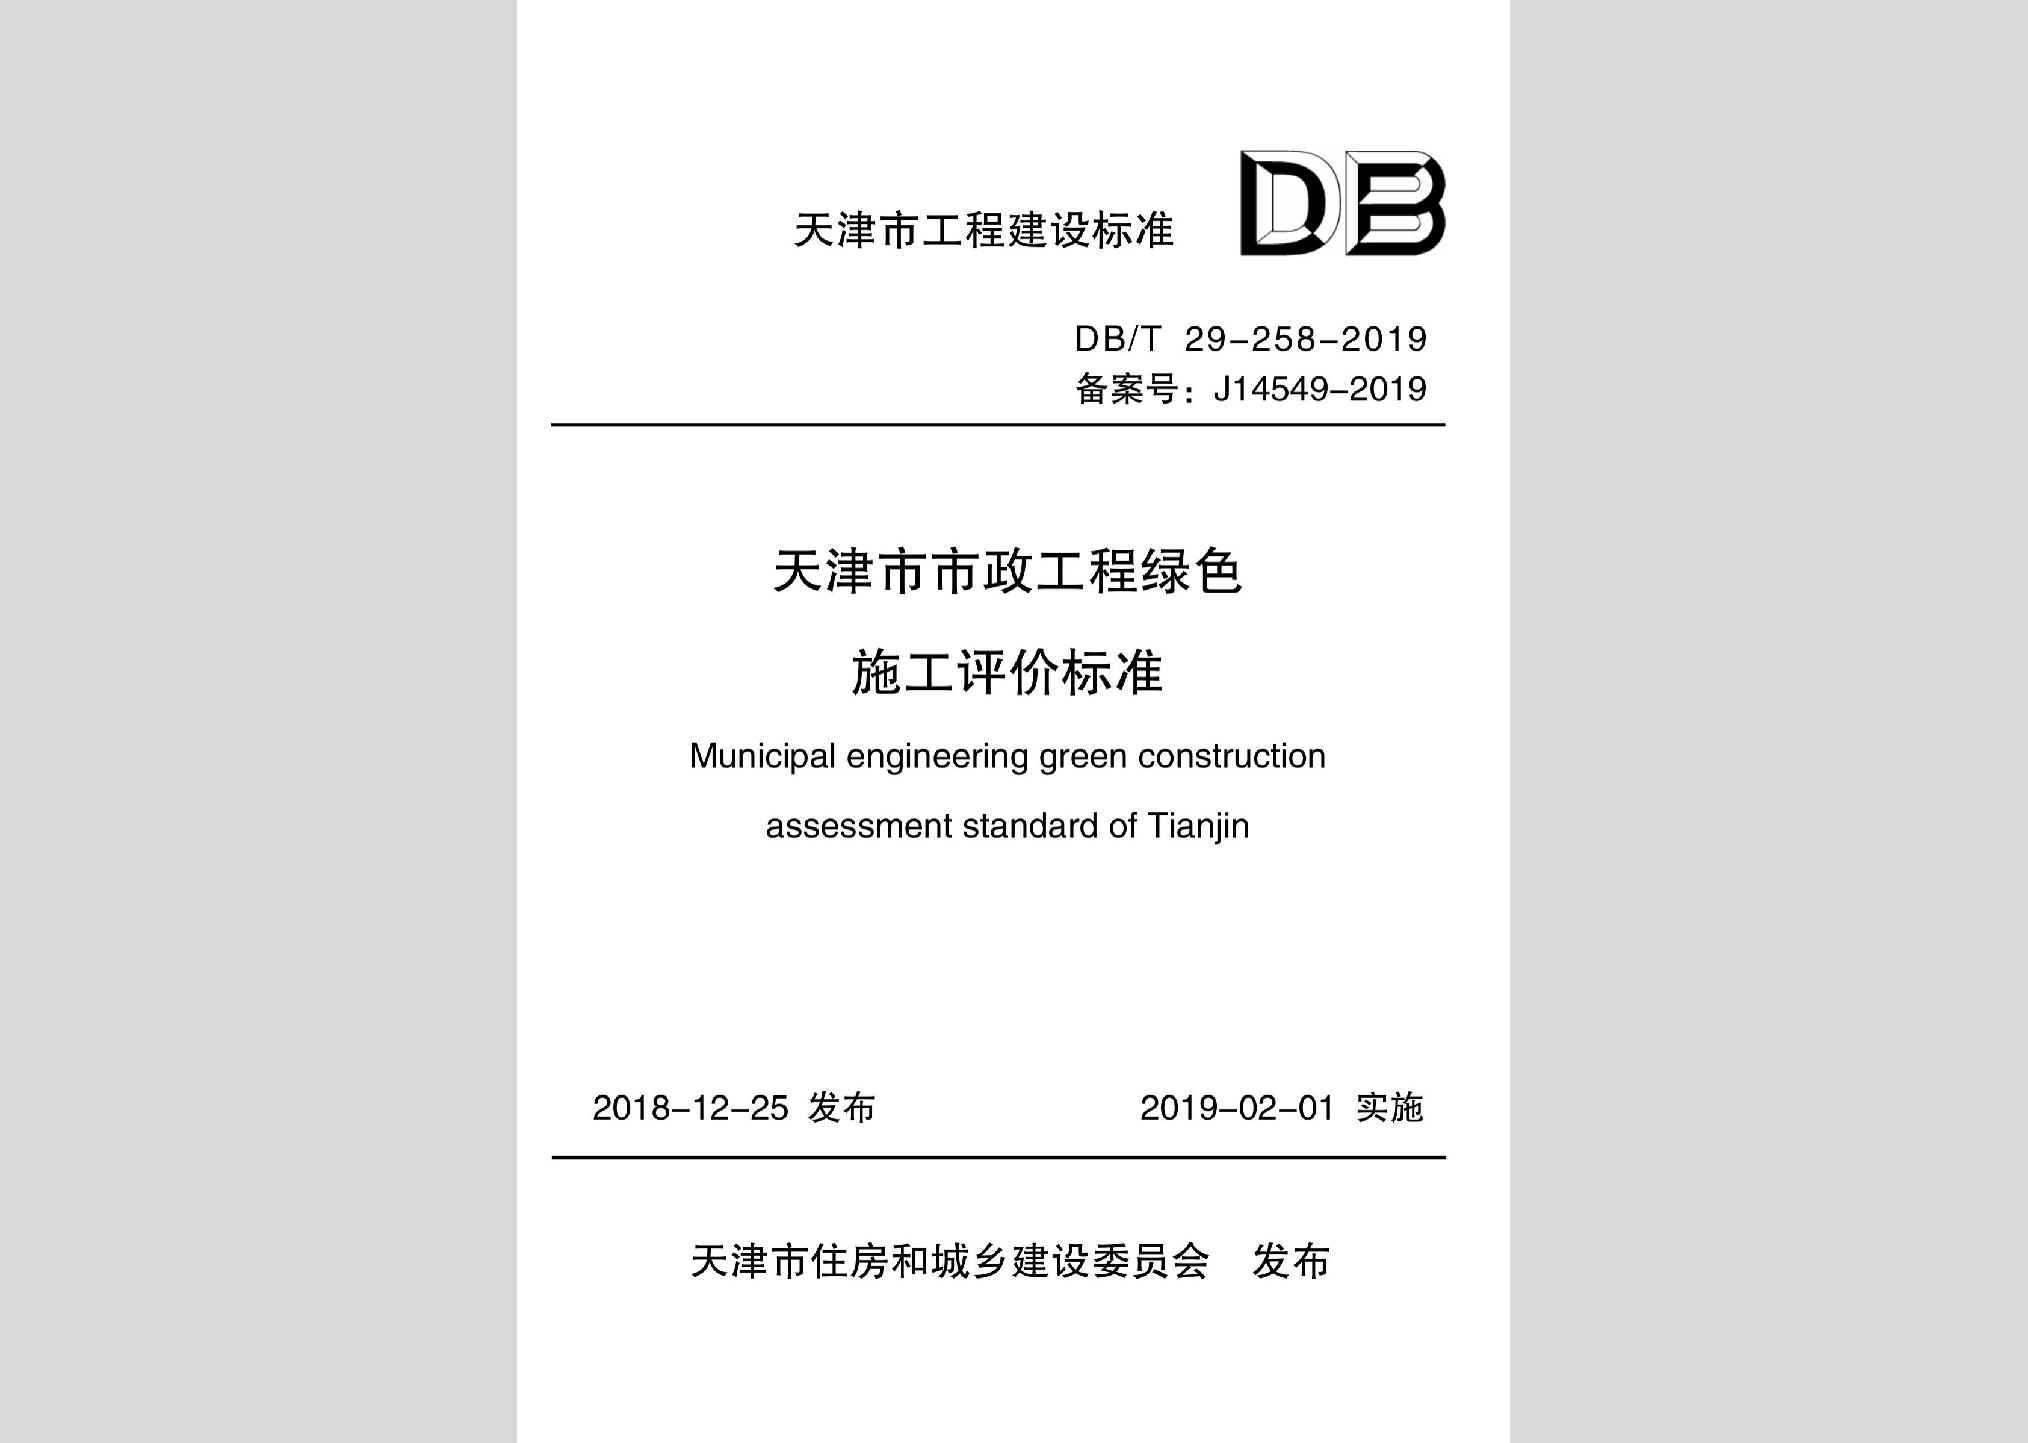 DB/T29-258-2019：天津市市政工程绿色施工评价标准